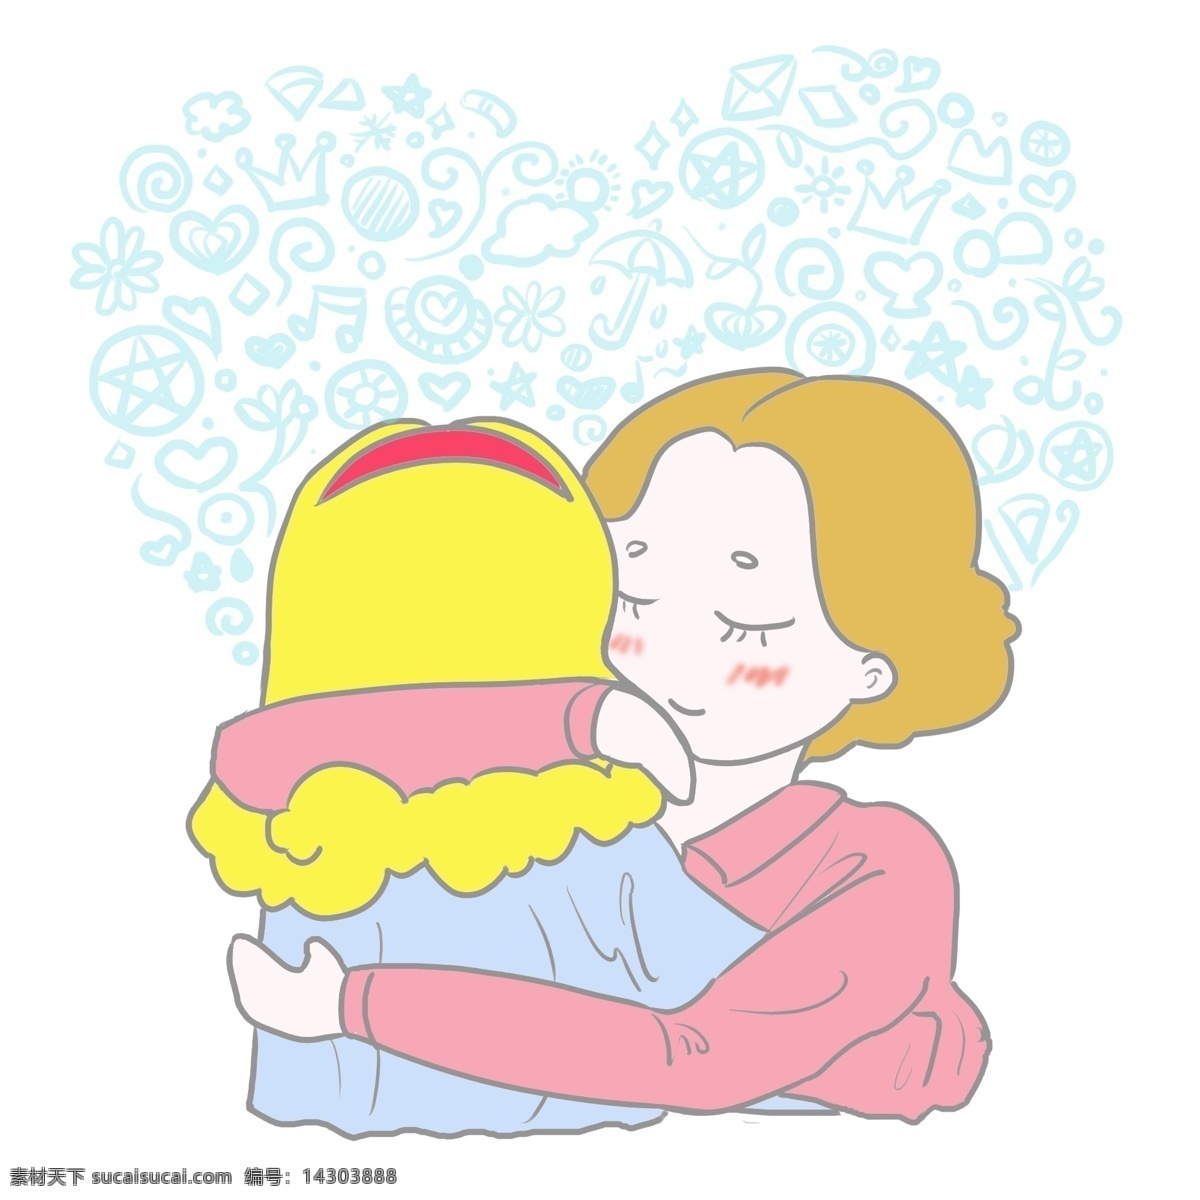 母亲节 母亲 拥抱 妈妈 节日 爱心 温暖 情怀